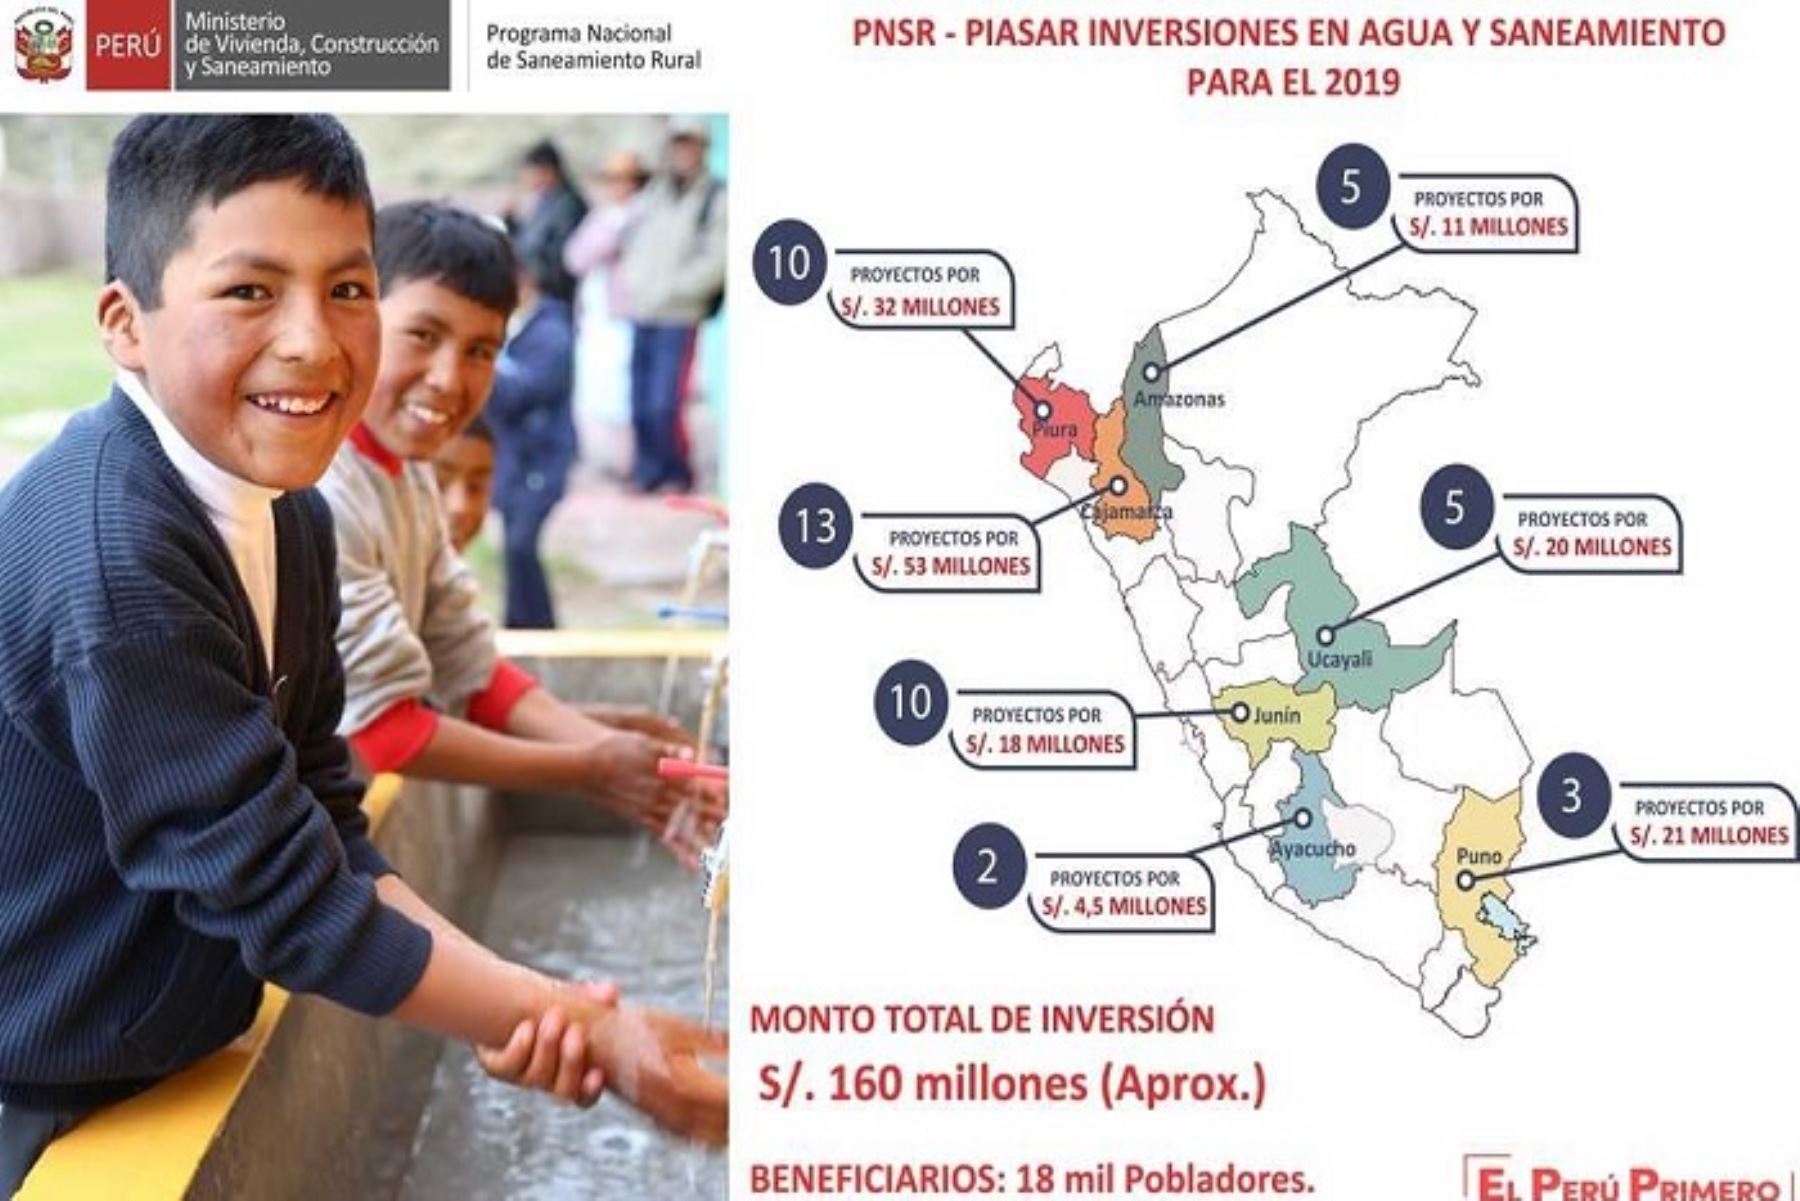 Cumpliendo con el compromiso del Gobierno de generar acceso a los servicios básicos de agua y saneamiento para más peruanos del ámbito rural, el Ministerio de Vivienda, Construcción y Saneamiento (MVCS) invertirá S/ 163 millones en proyectos de agua y saneamiento rural en el 2019, mediante los cuales se beneficiarán a más de 18 mil pobladores de 7 regiones.